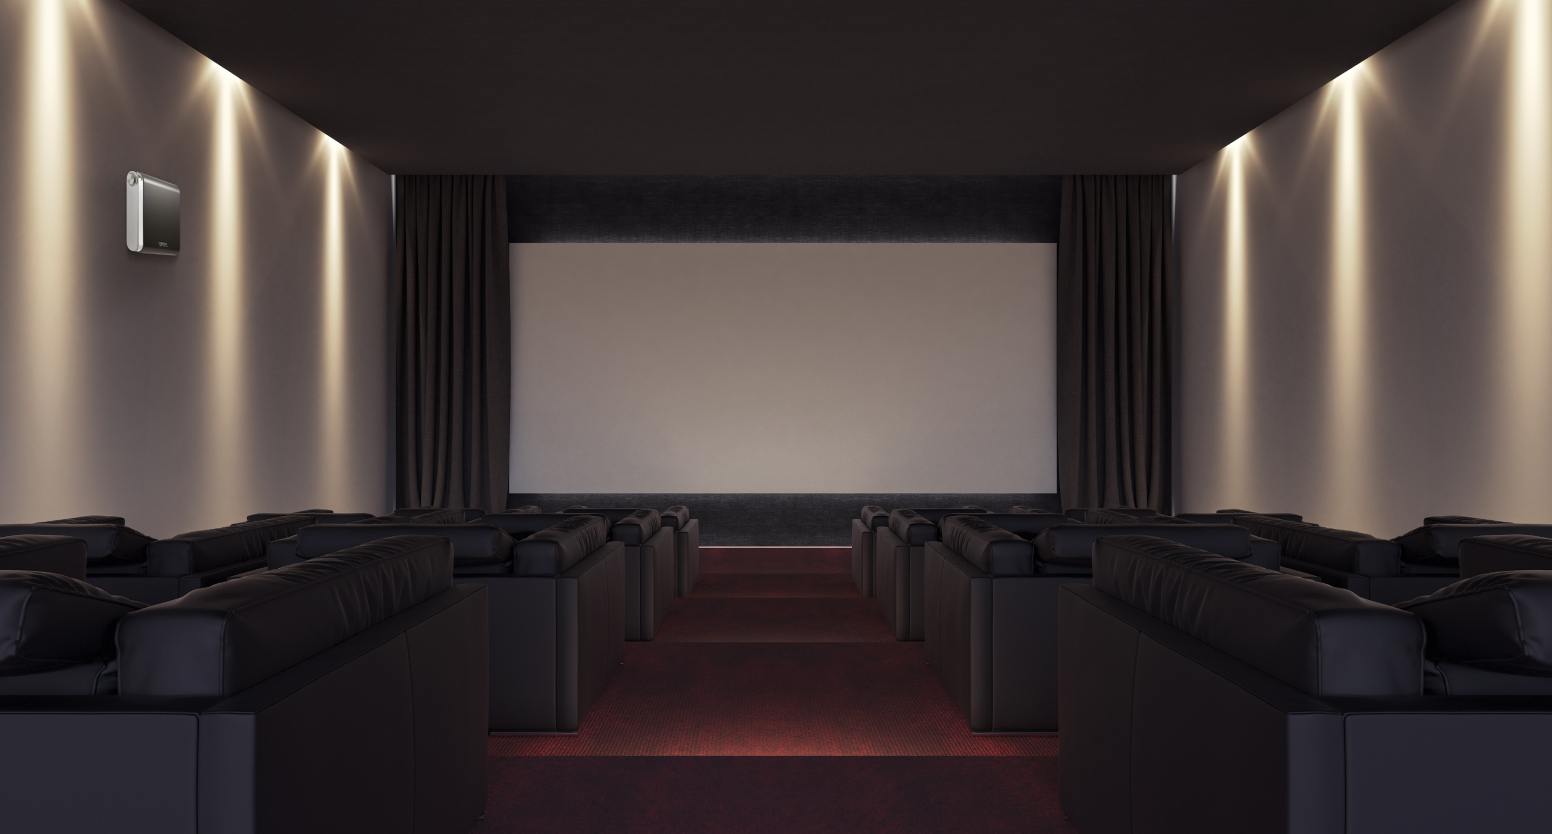 소파가 놓여있는 영화관 안 좌측 벽면에는 넓은 공간에 대해 관리가 가능한 세스코(CESCO)의 공간 방향기 에어퍼퓸이 설치되어 있습니다.